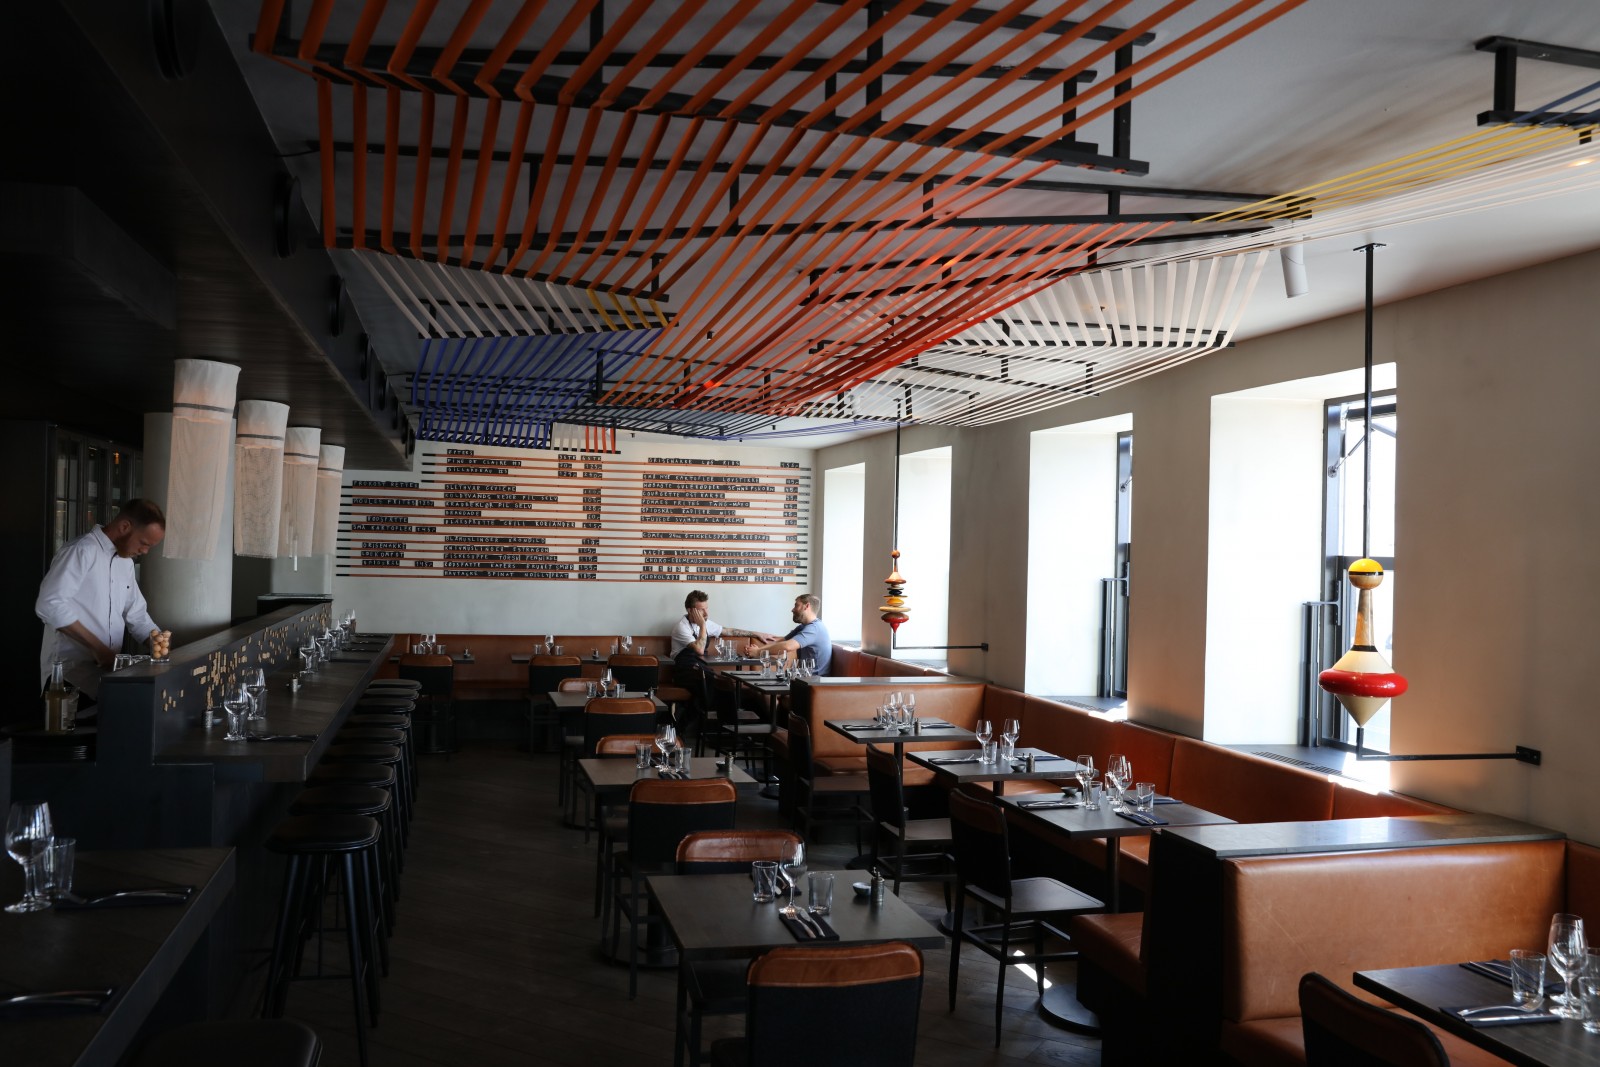 <h1>Restaurant Musling får kunstudsmykning</h1><h4>Belysning af kunst installation inden - og udendørs</h4>